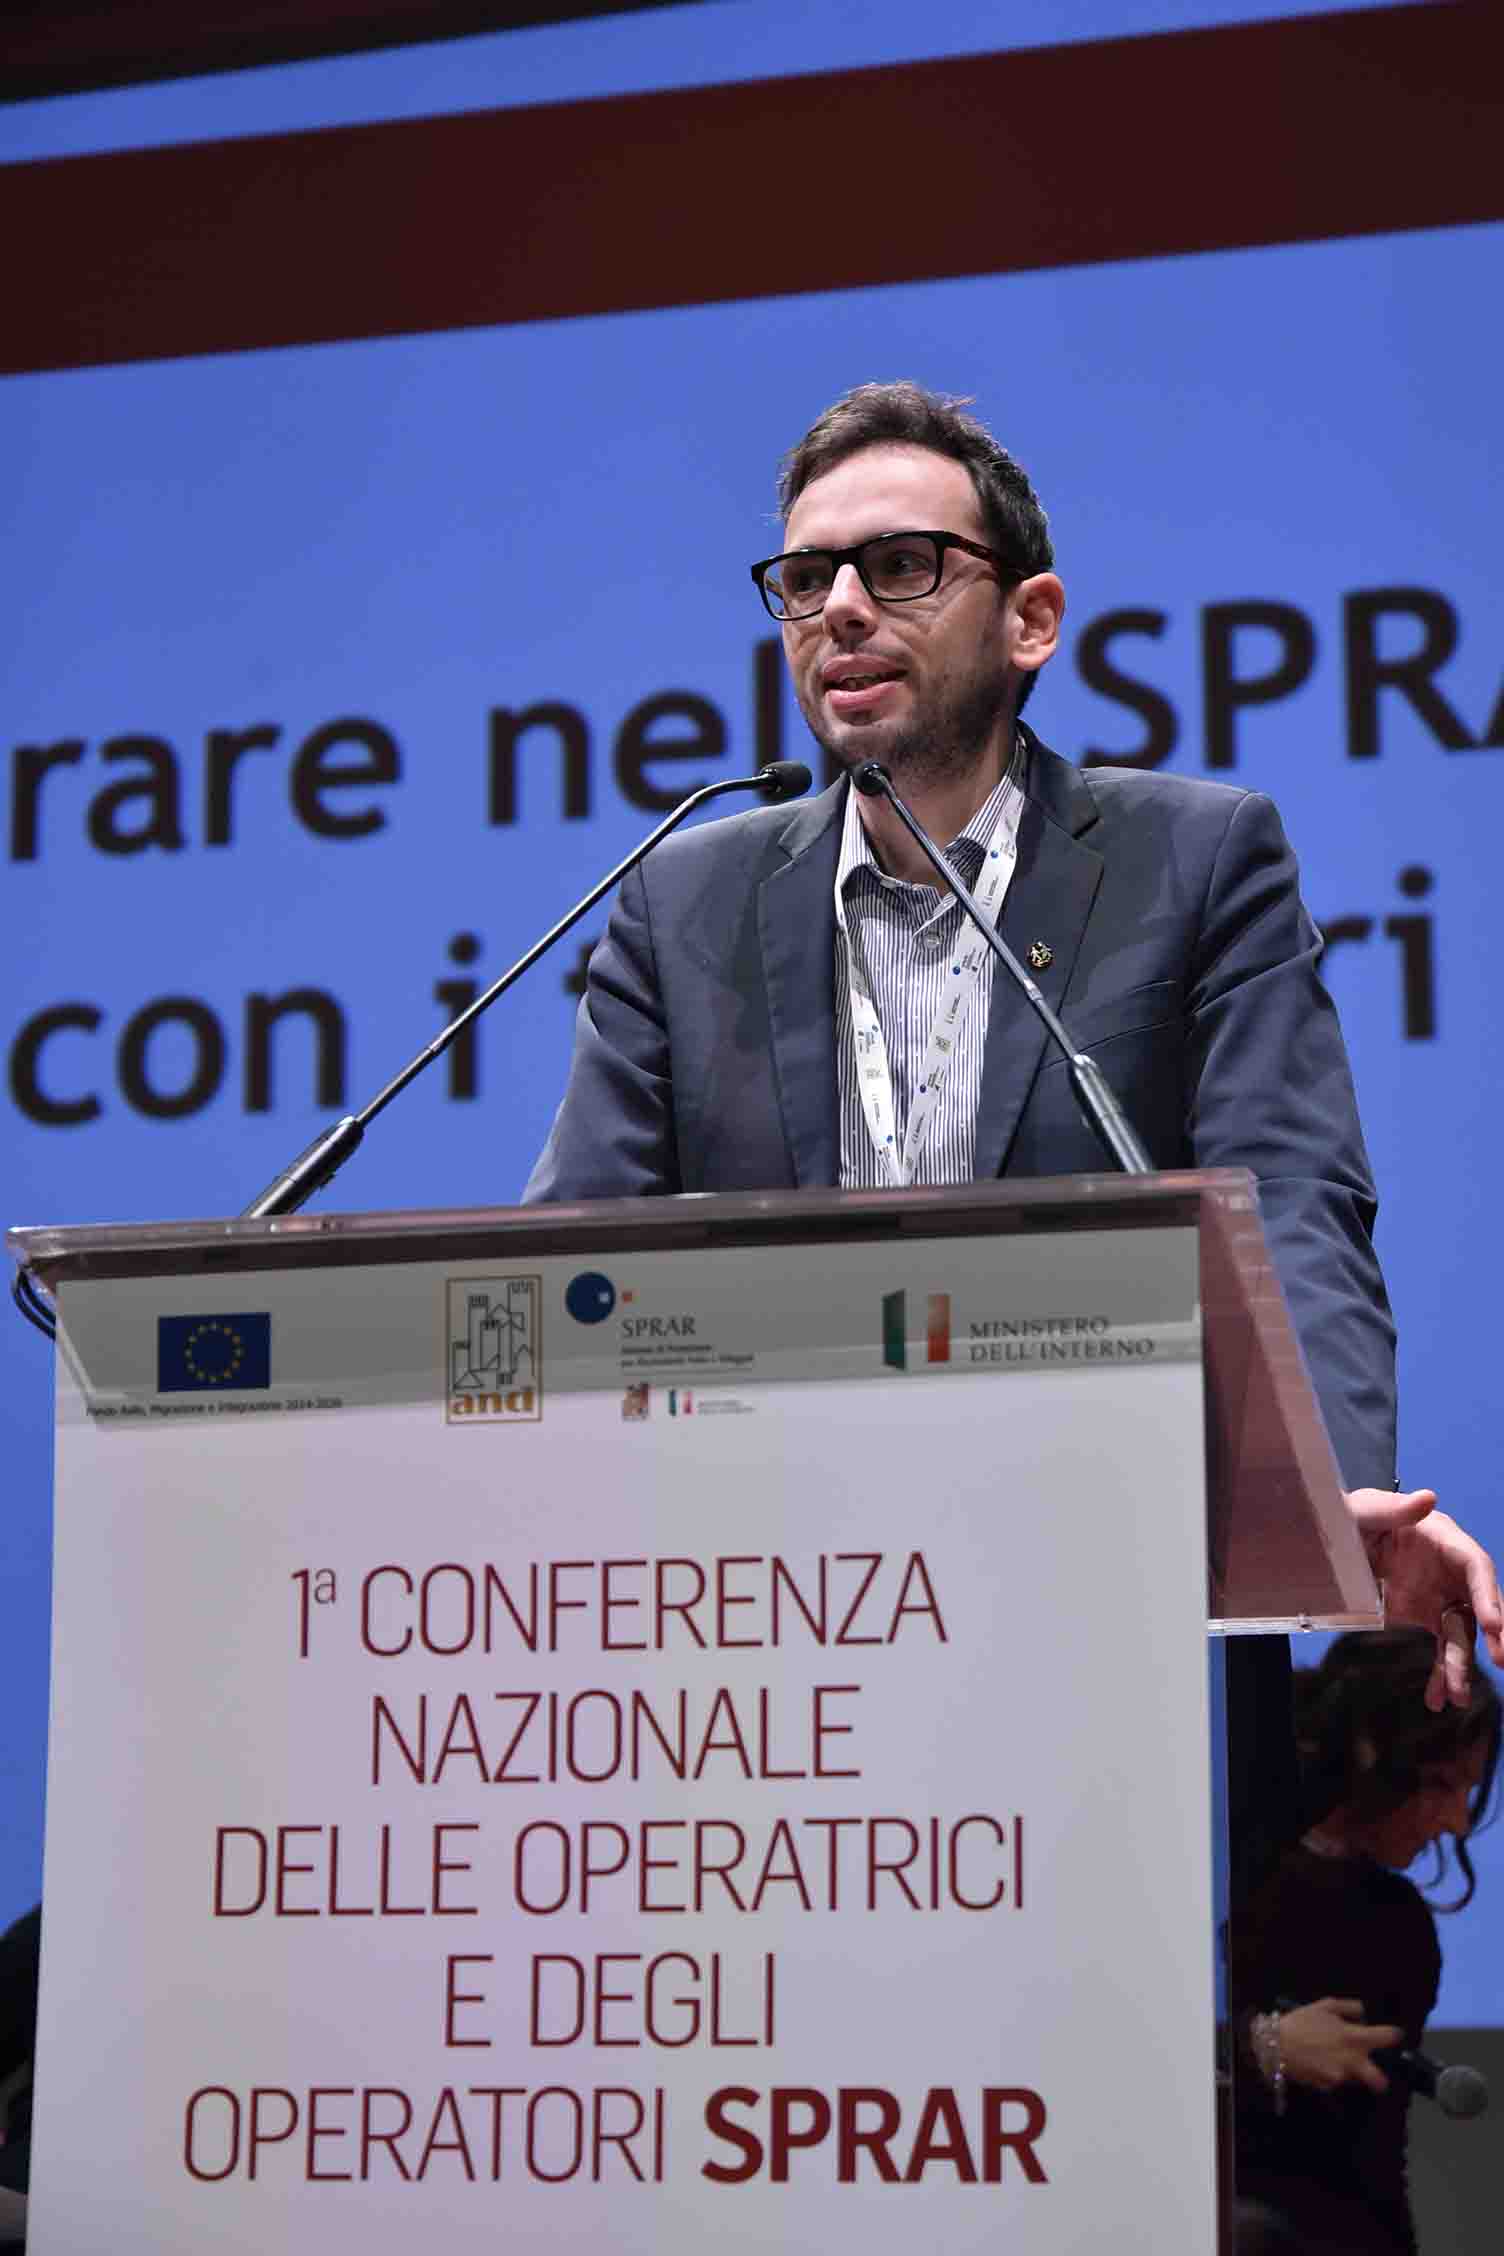 https://www.sprar.it/conferenza-nazionale-sprar/wp-content/uploads/2018/05/MRM768129.jpg